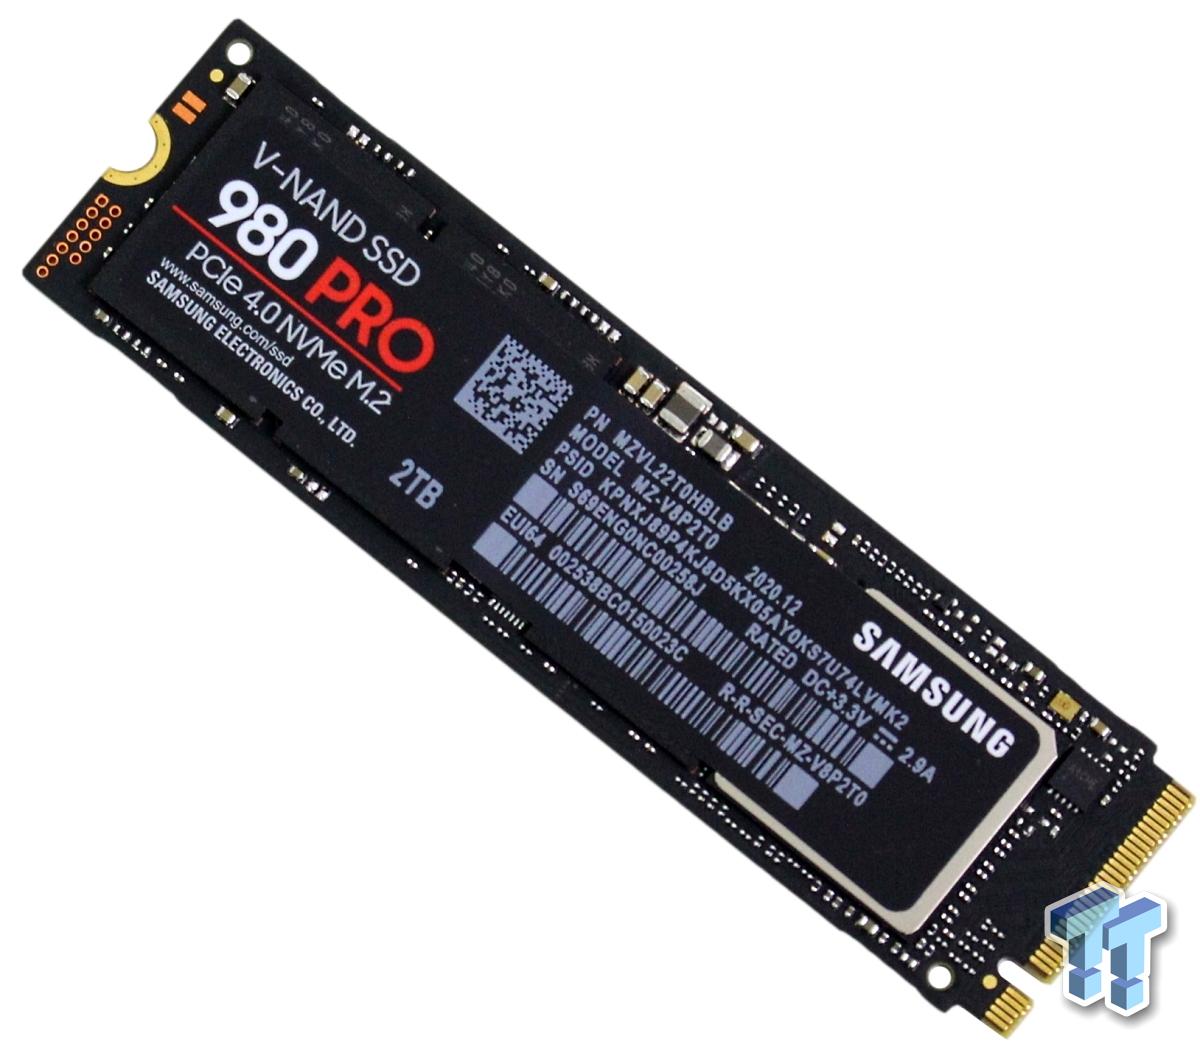 Samsung 980 Pro 2TB M.2 SSD Review | TweakTown